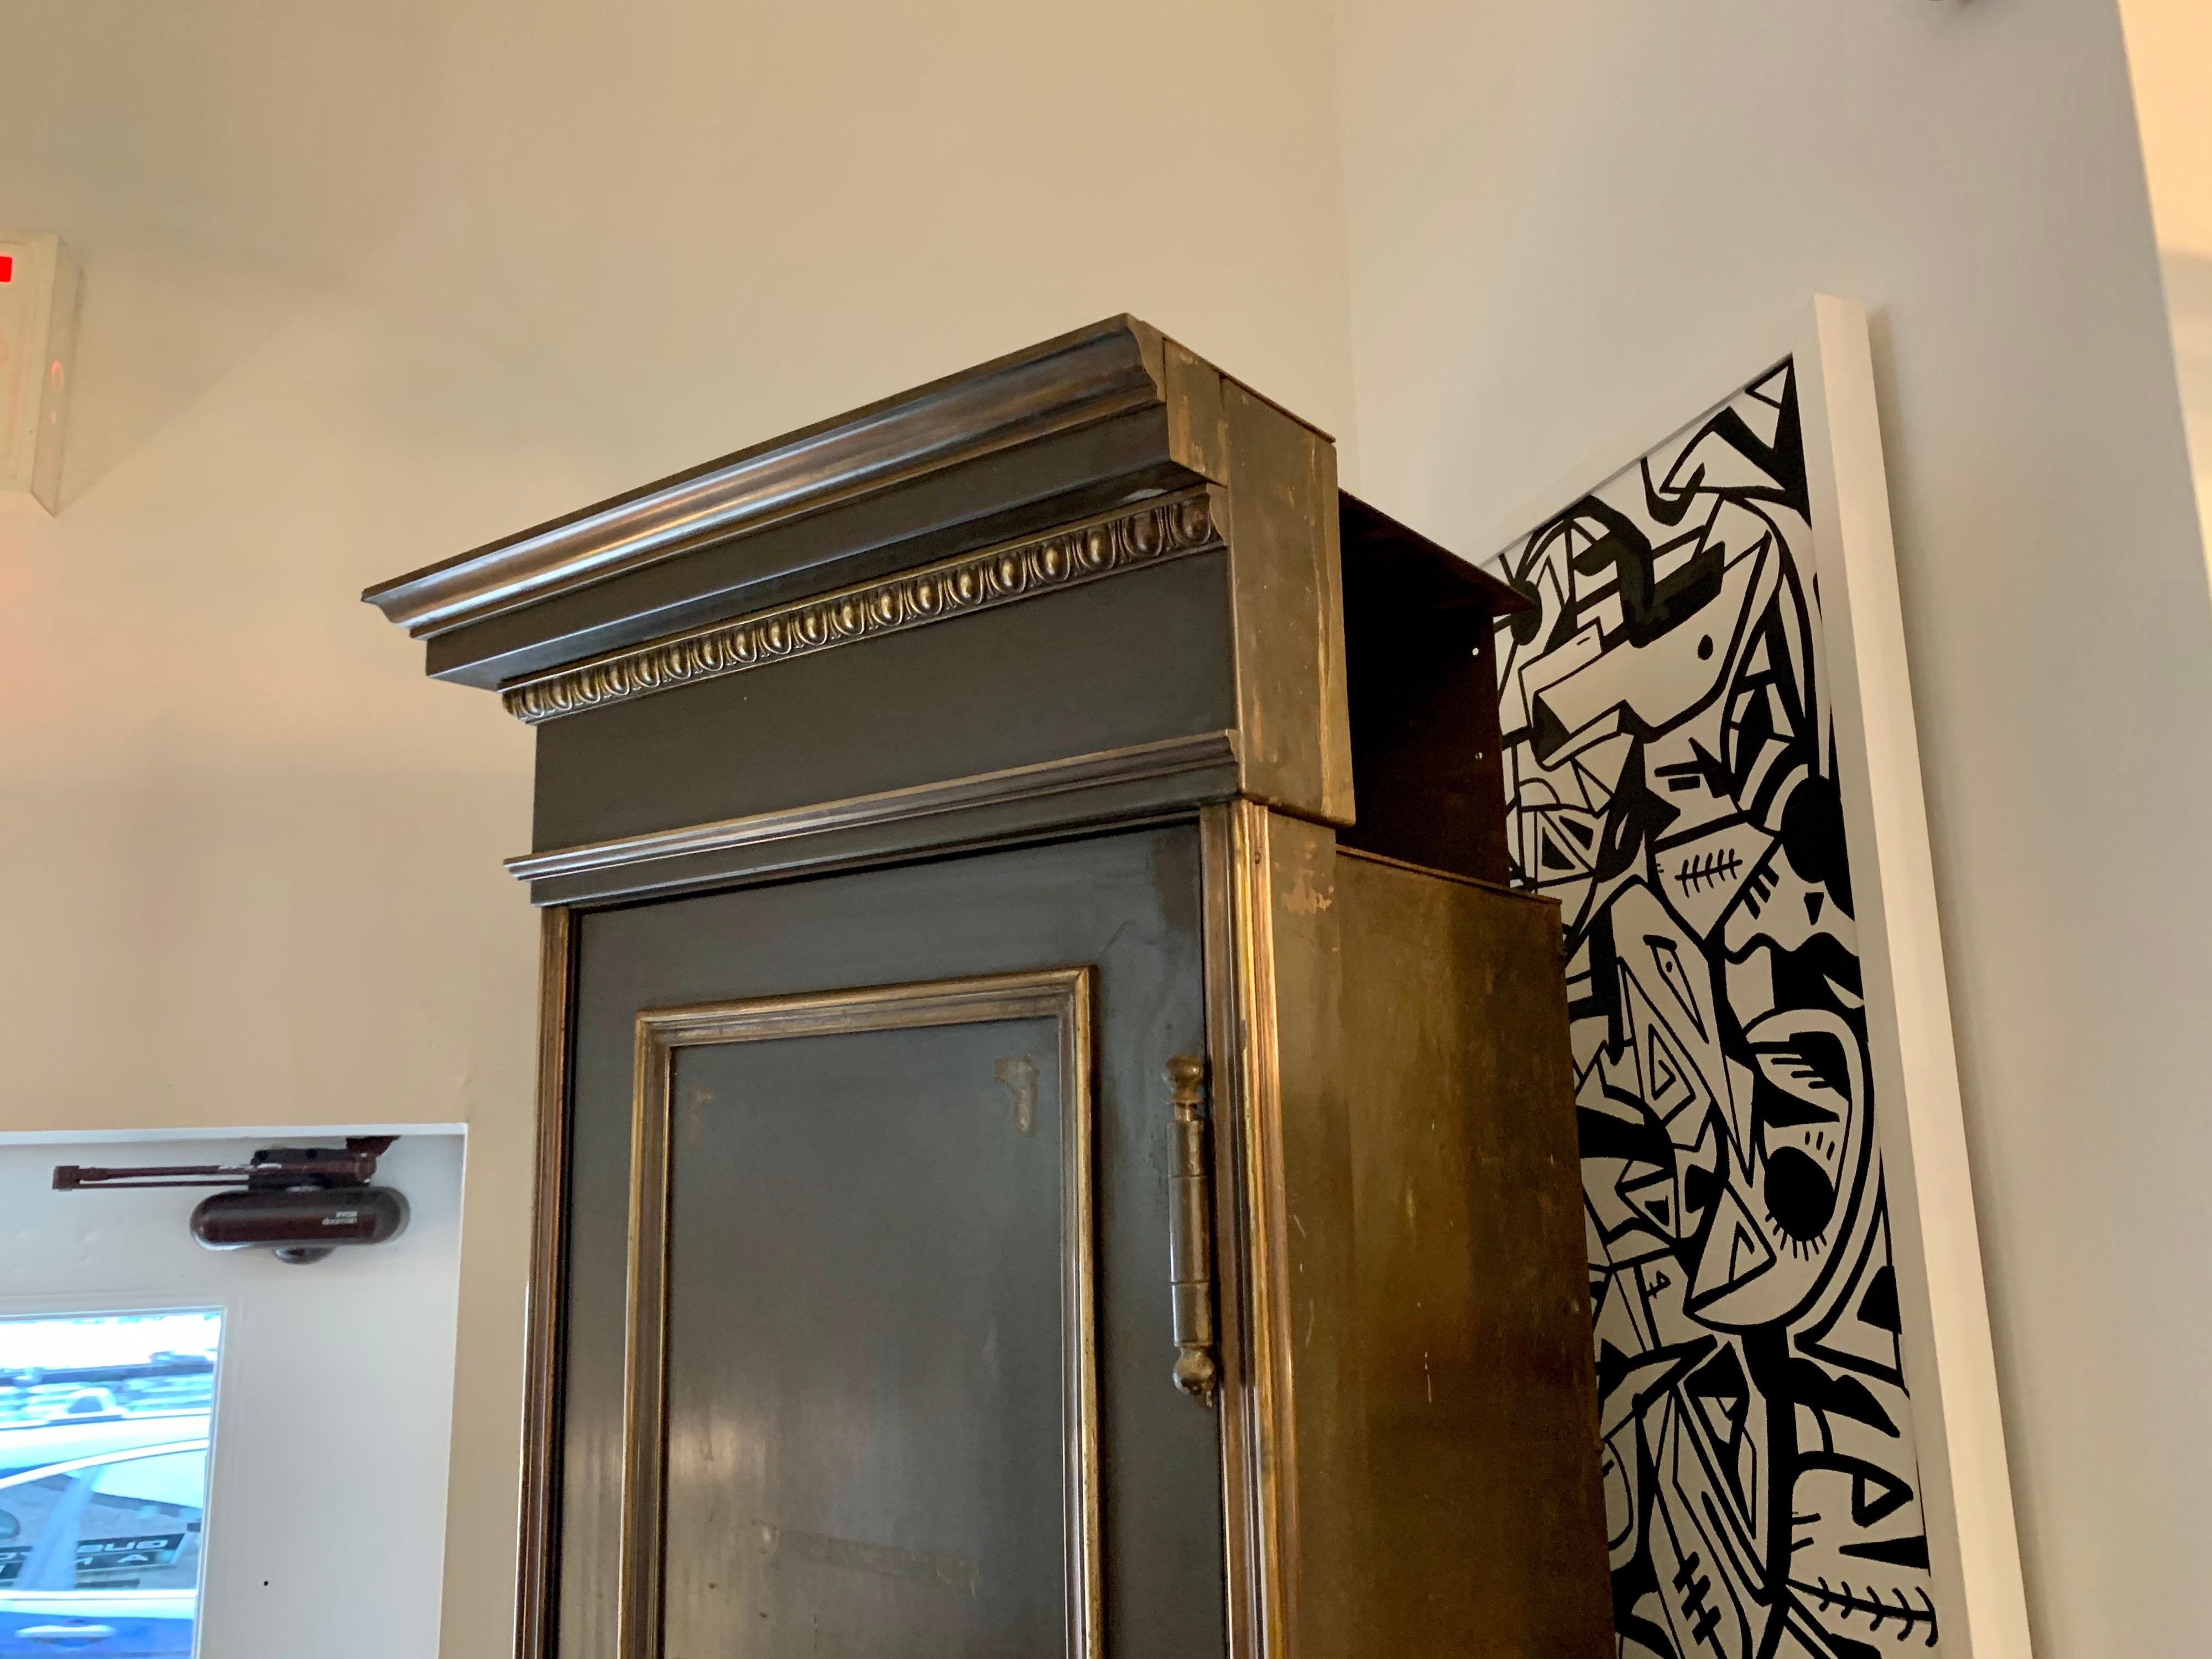 Dieser sehr schwere Hochschrank aus Eisen und Bronze mit schwarzem belgischem Marmorsockel ist komplett original. Zu den Details im Inneren gehört eine Tür mit schwerem Drehgriff, die sich öffnen lässt und Haken und Regale zur Aufbewahrung bietet.